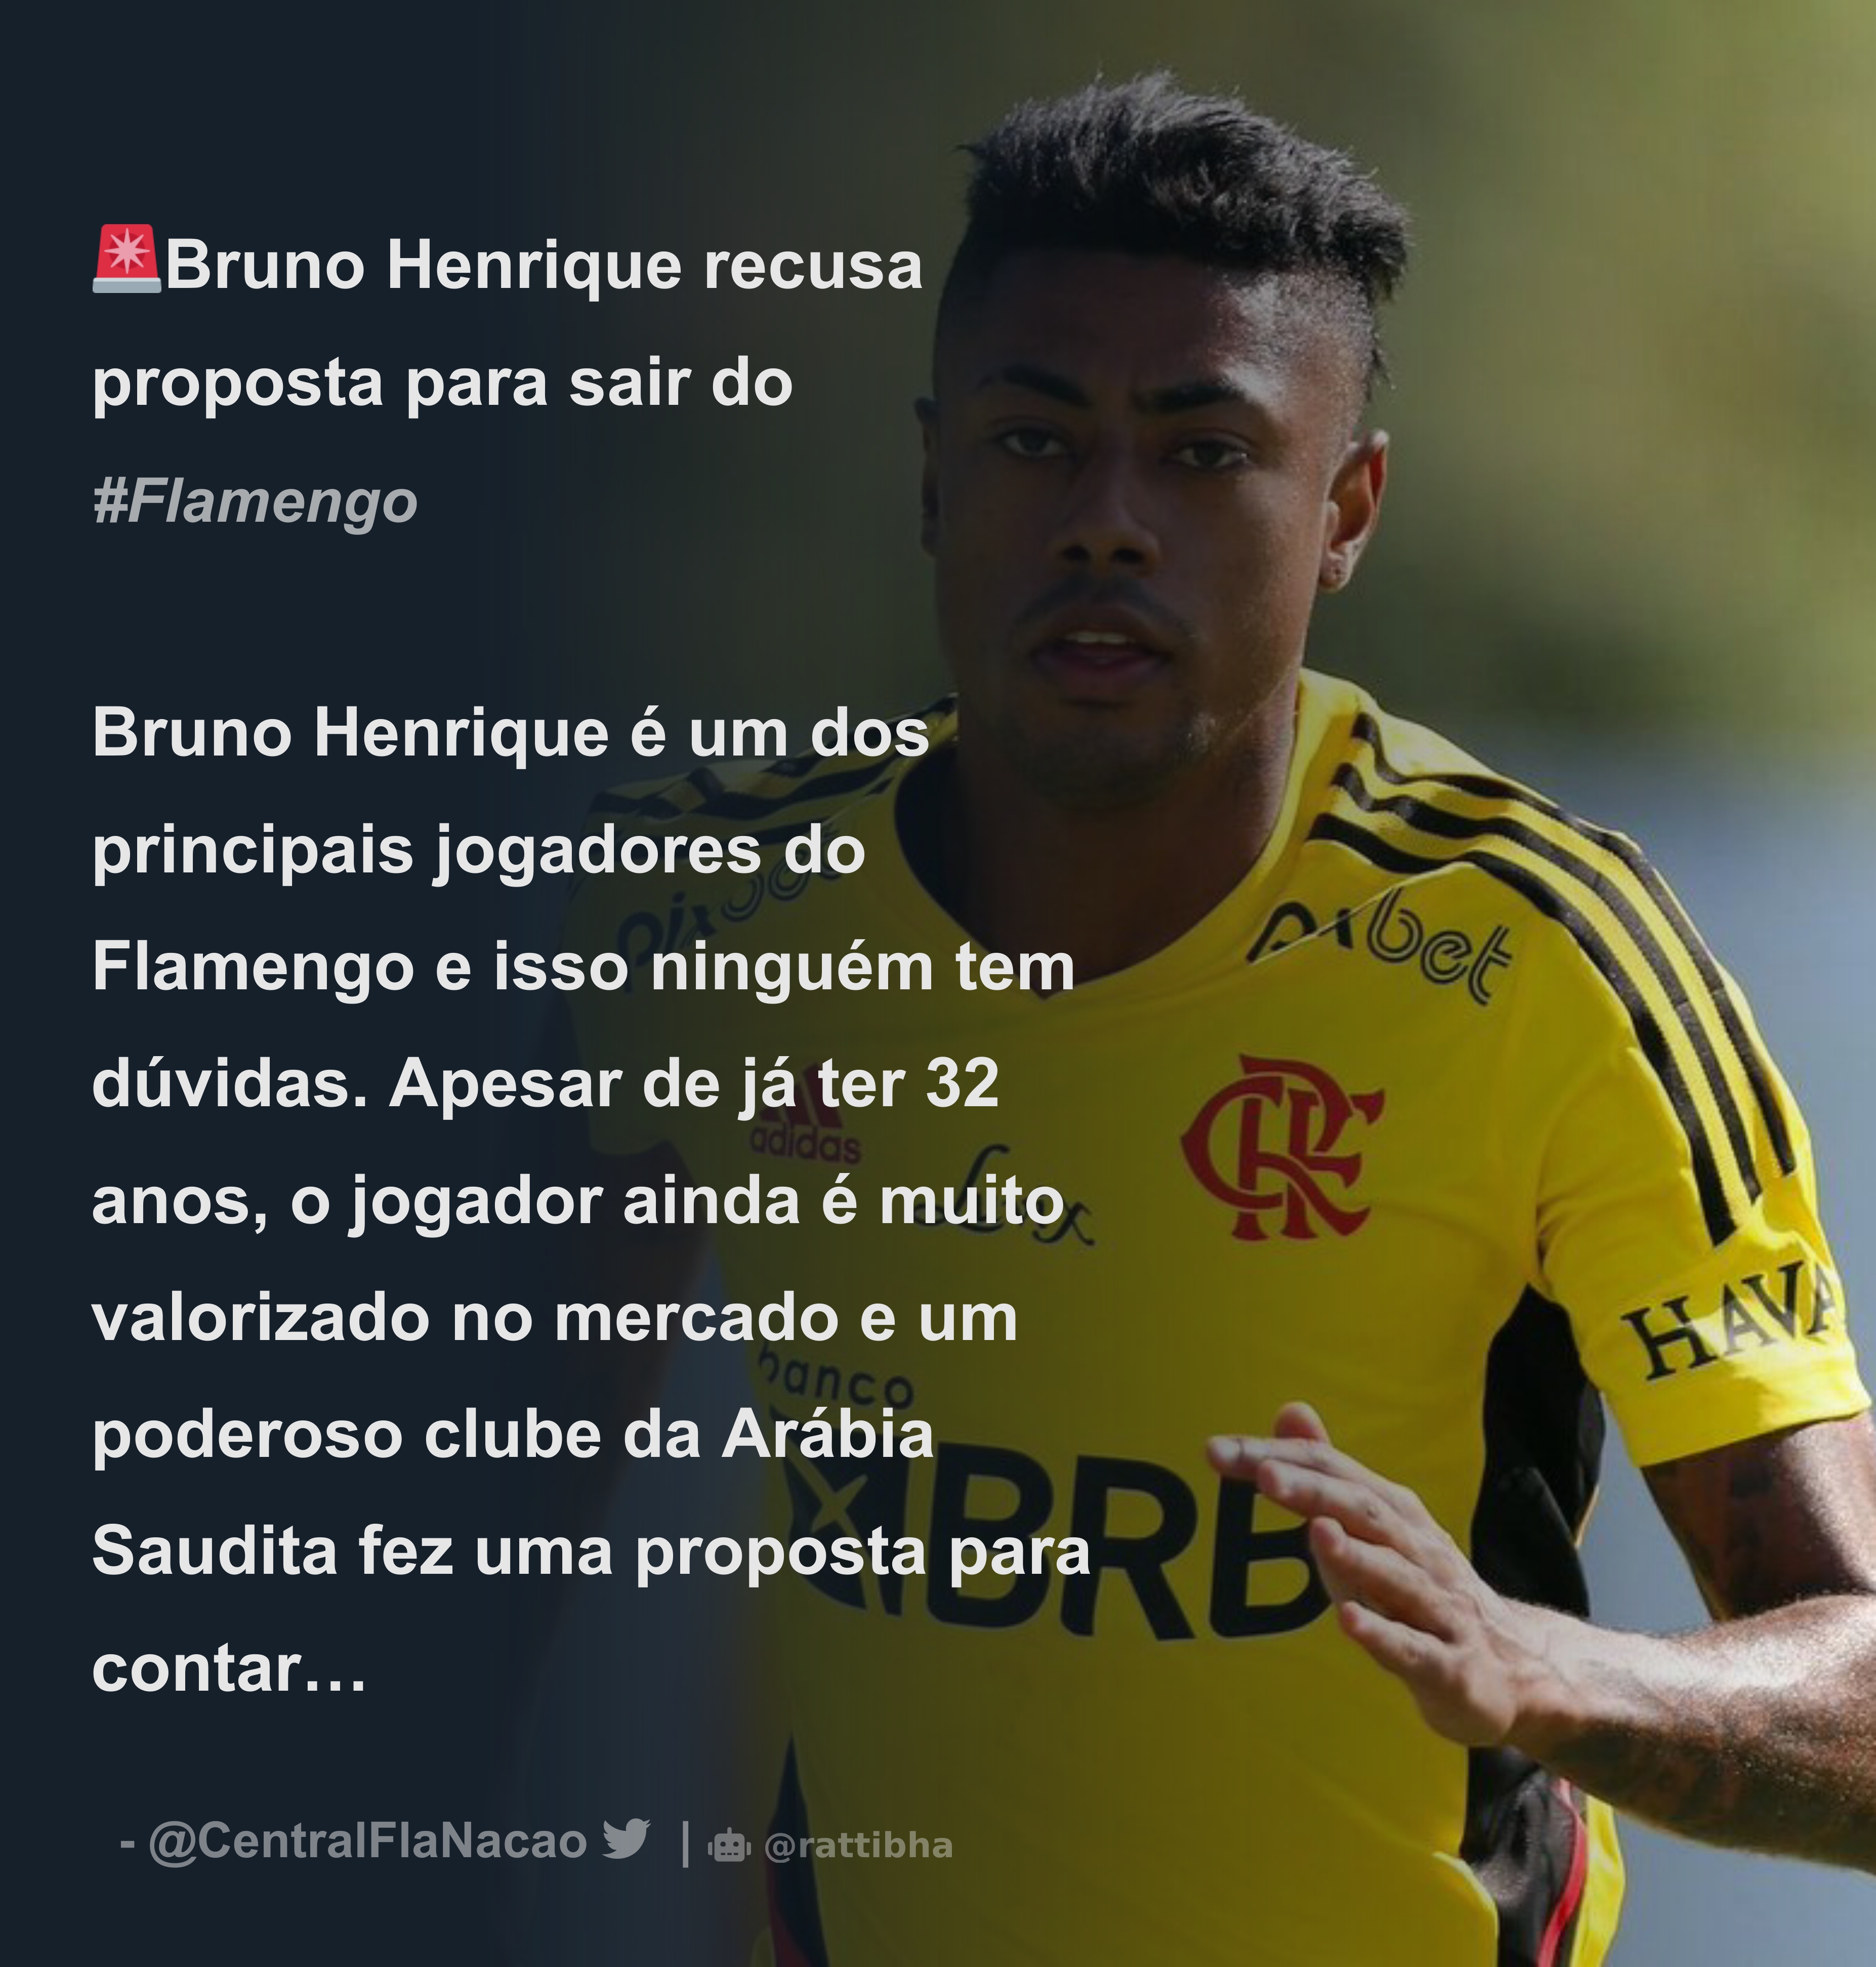 Saída de dois jogadores e novidade por Bruno Henrique